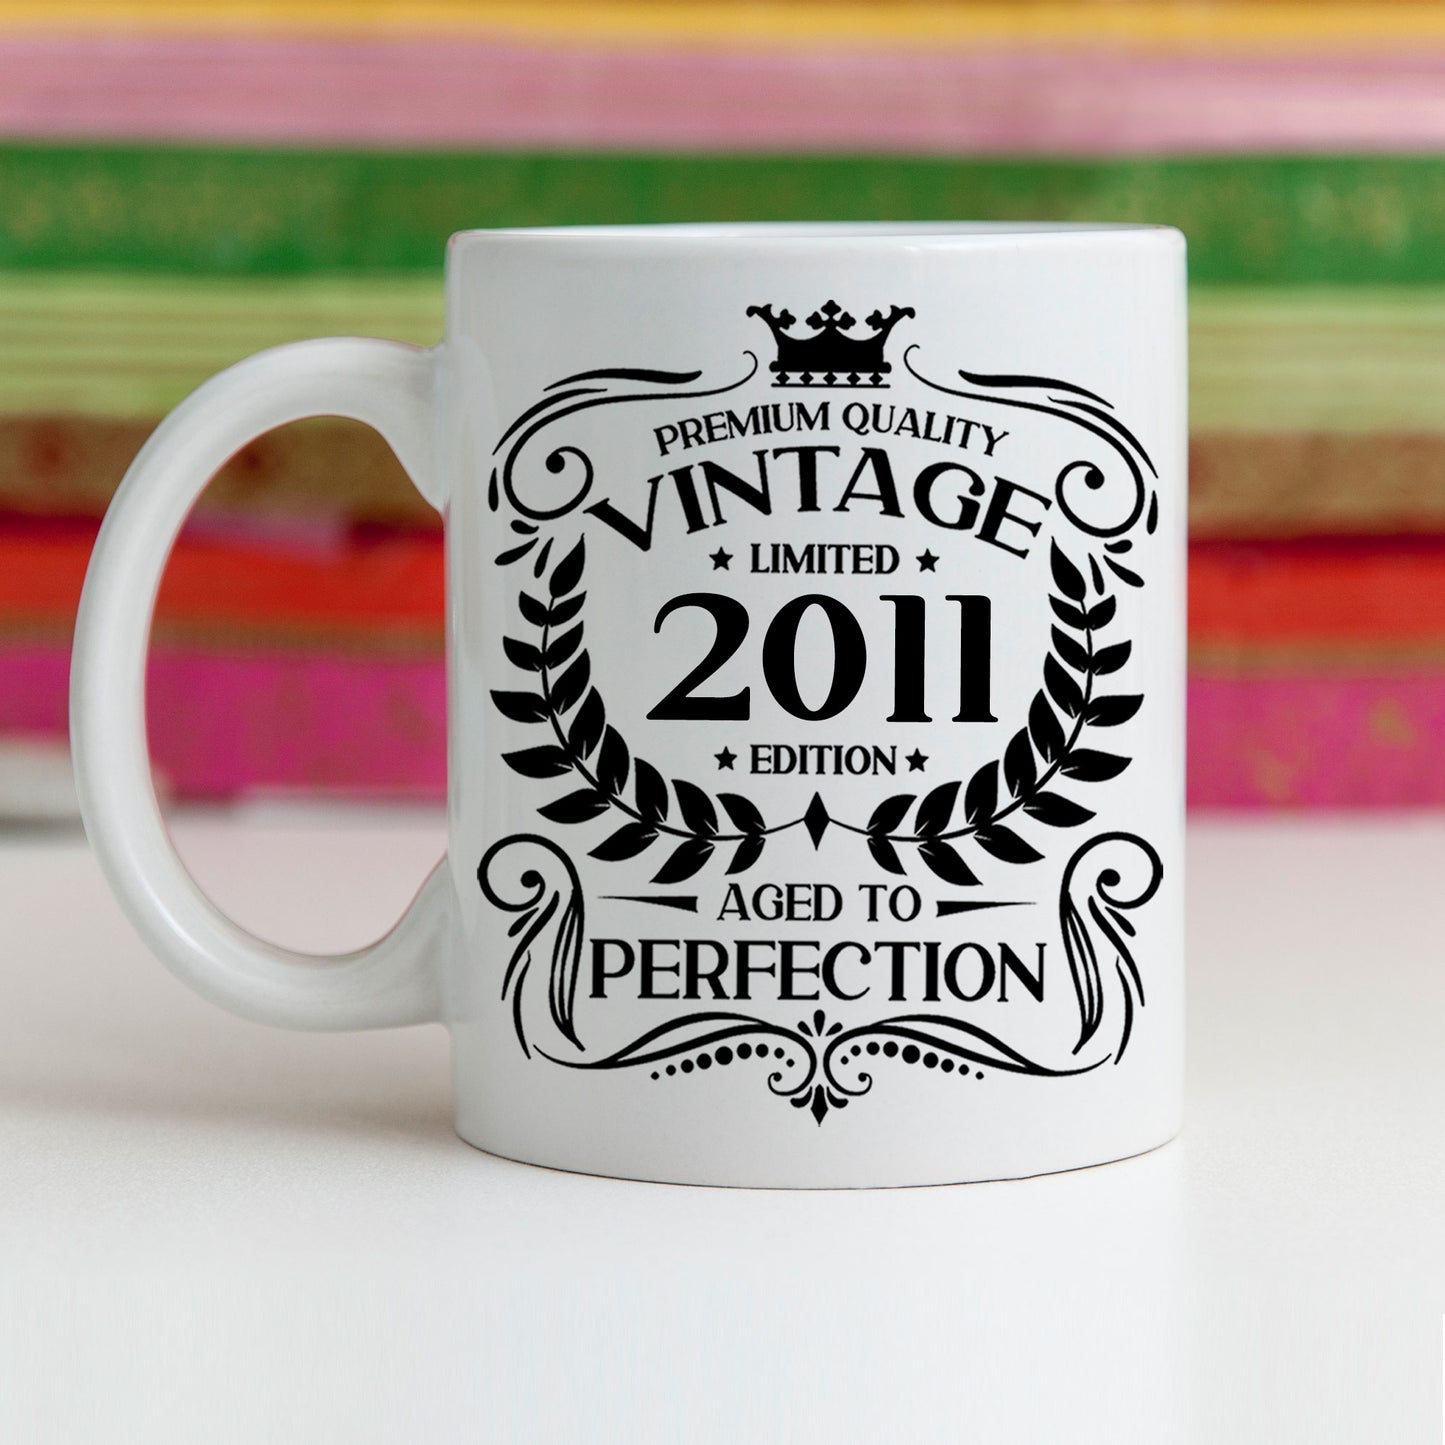 Personalised Vintage 2011 Mug and/or Coaster  - Always Looking Good -   